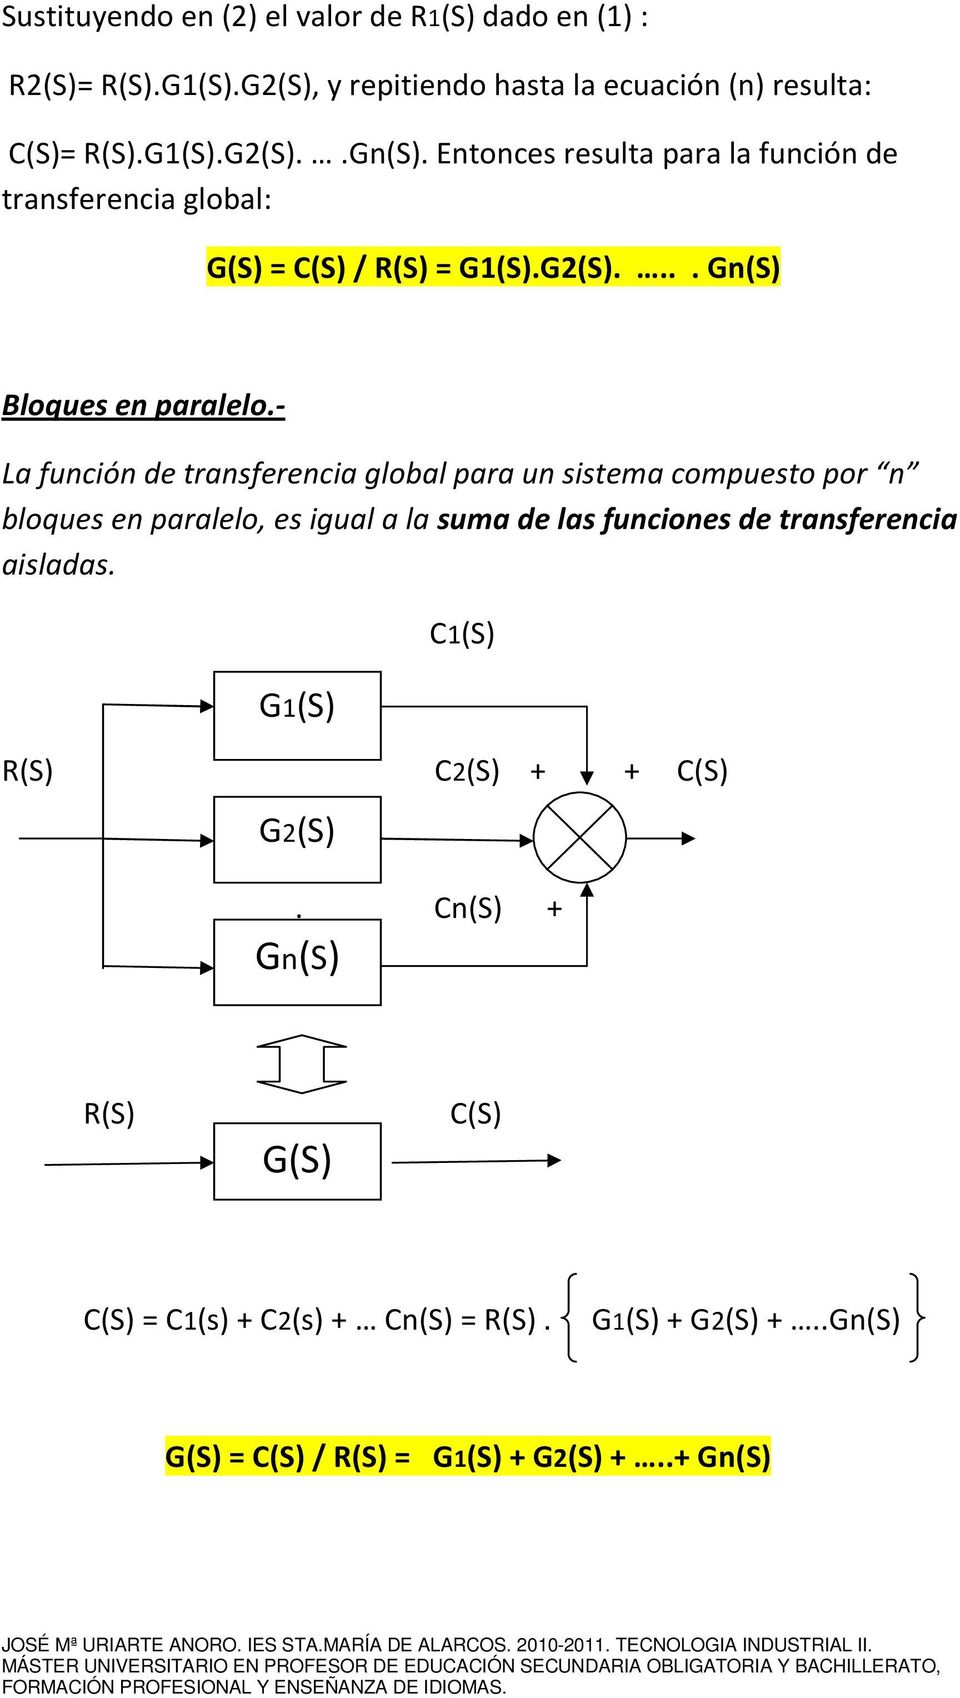 - La función de transferencia global para un sistema compuesto por n bloques en paralelo, es igual a la suma de las funciones de transferencia